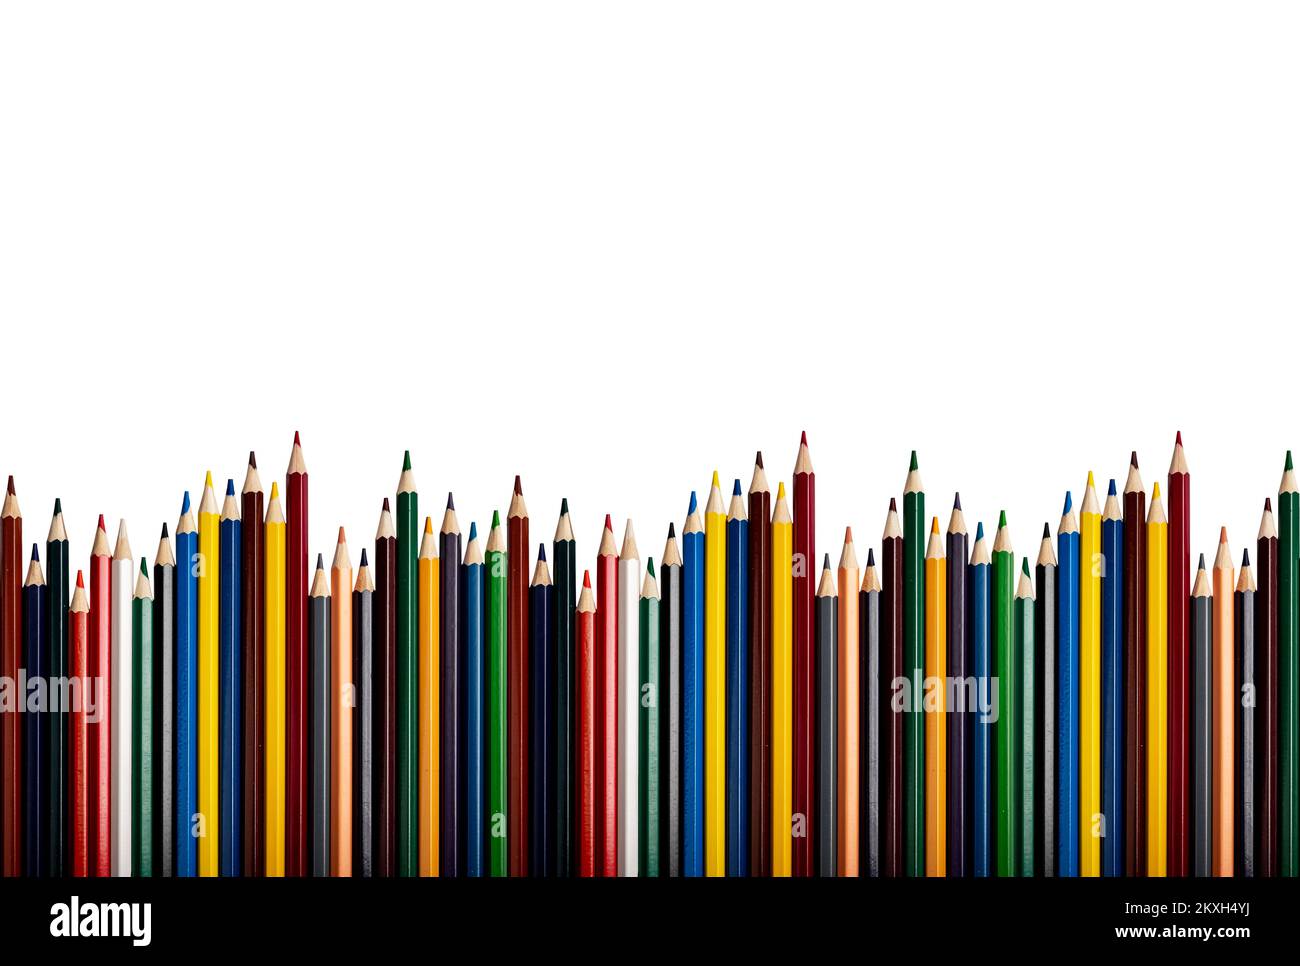 Farbige Bleistifte Randdekoration isoliert auf weißem Hintergrund. Mehrfarbige Verbrauchsmaterialien, Zeichenwerkzeuge, wellenförmige unebene Reihe. Hochwertiges Foto Stockfoto